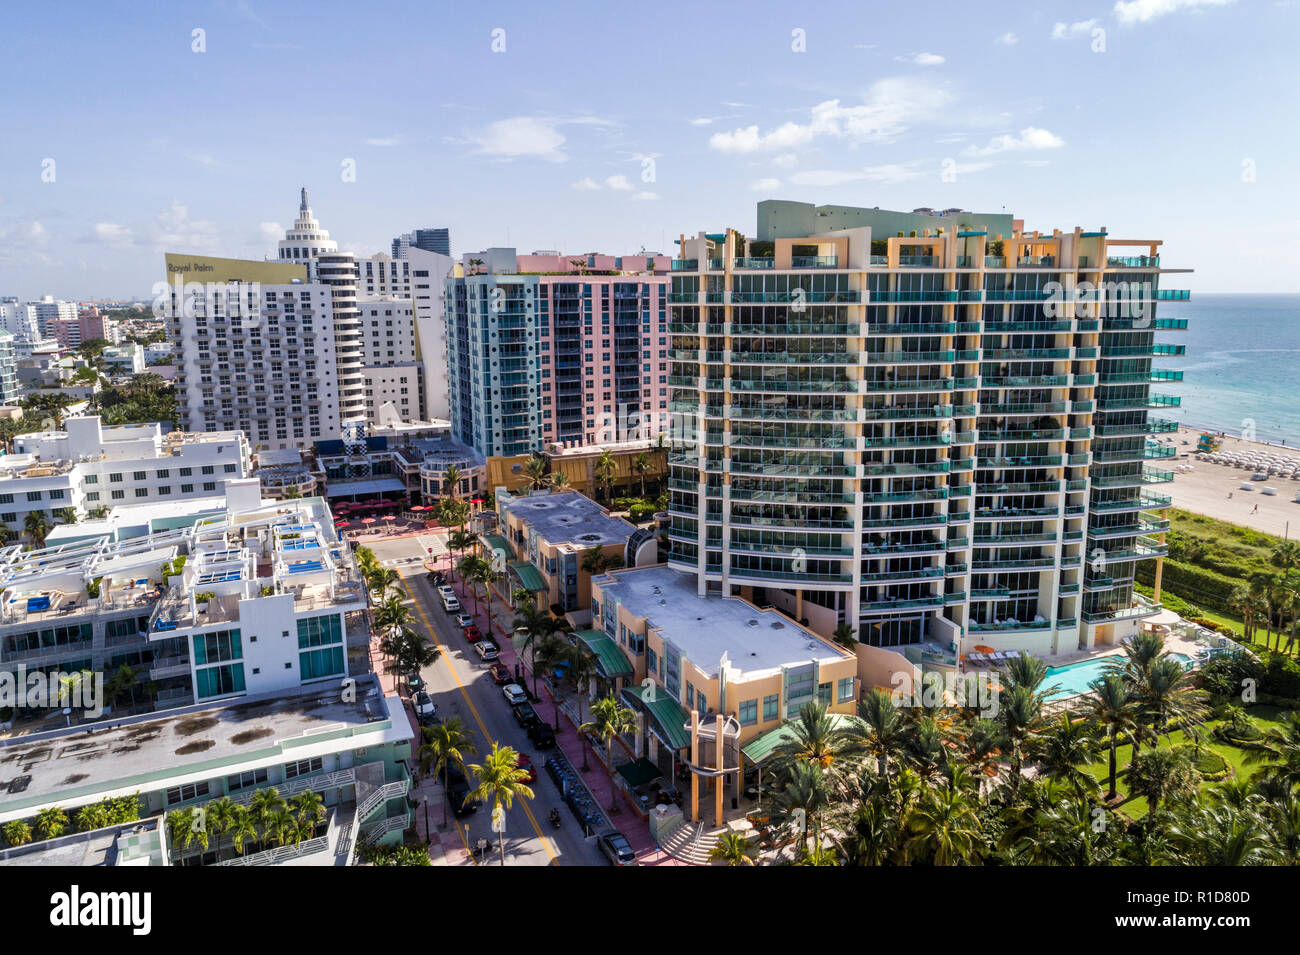 Miami Beach Florida, Ocean Drive, Luftaufnahme von oben, Hotel, Il Villaggio, Eigentumswohnung Wohnapartments Gebäude Gebäude Gehäuse, hohe r Stockfoto